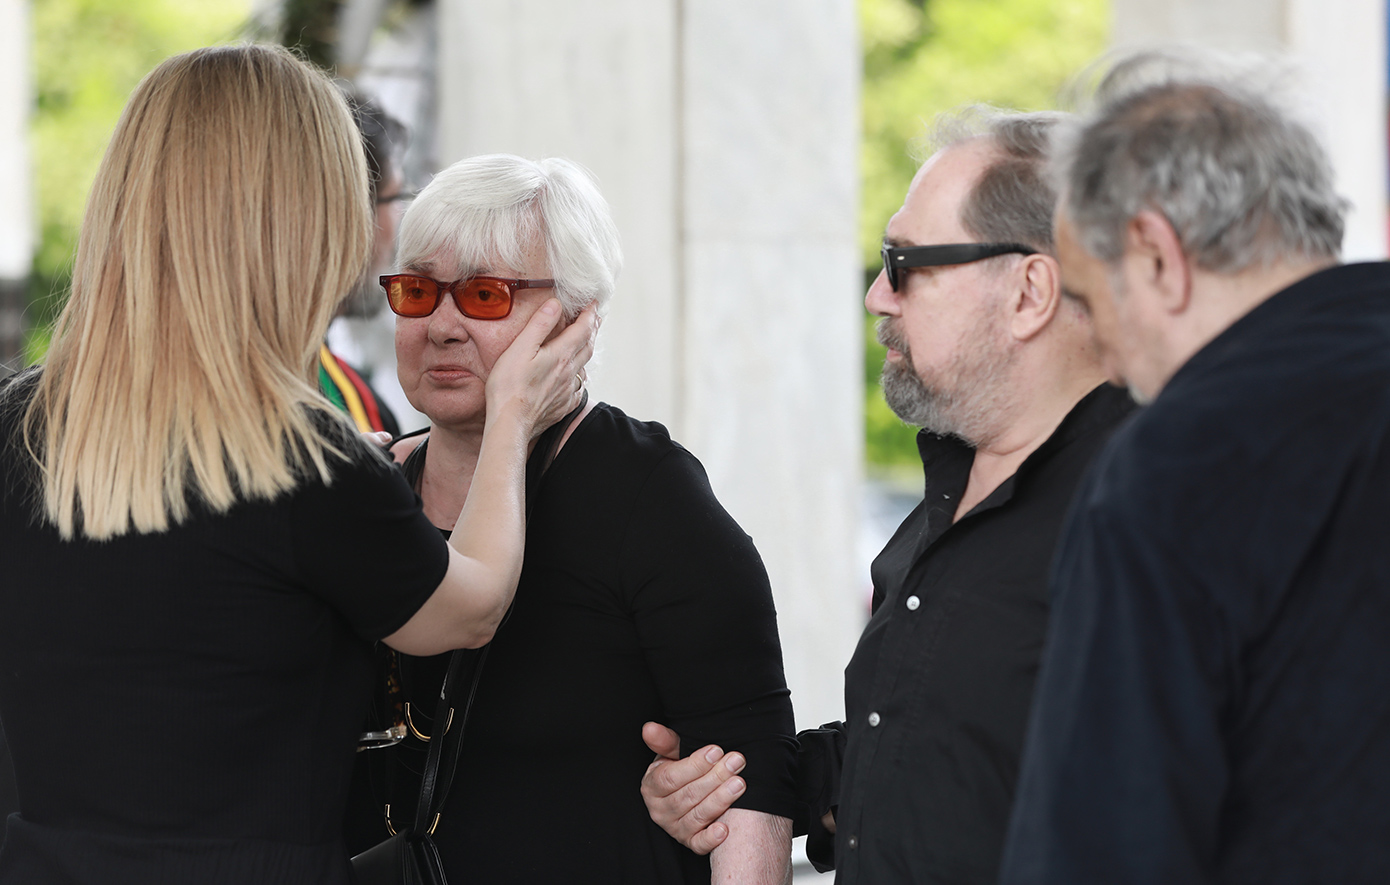 Η τρυφερή αγκαλιά της Μαρίνας Ψάλτη στην Ξένια Καλογεροπούλου στην κηδεία του Γιάννη Φέρτη